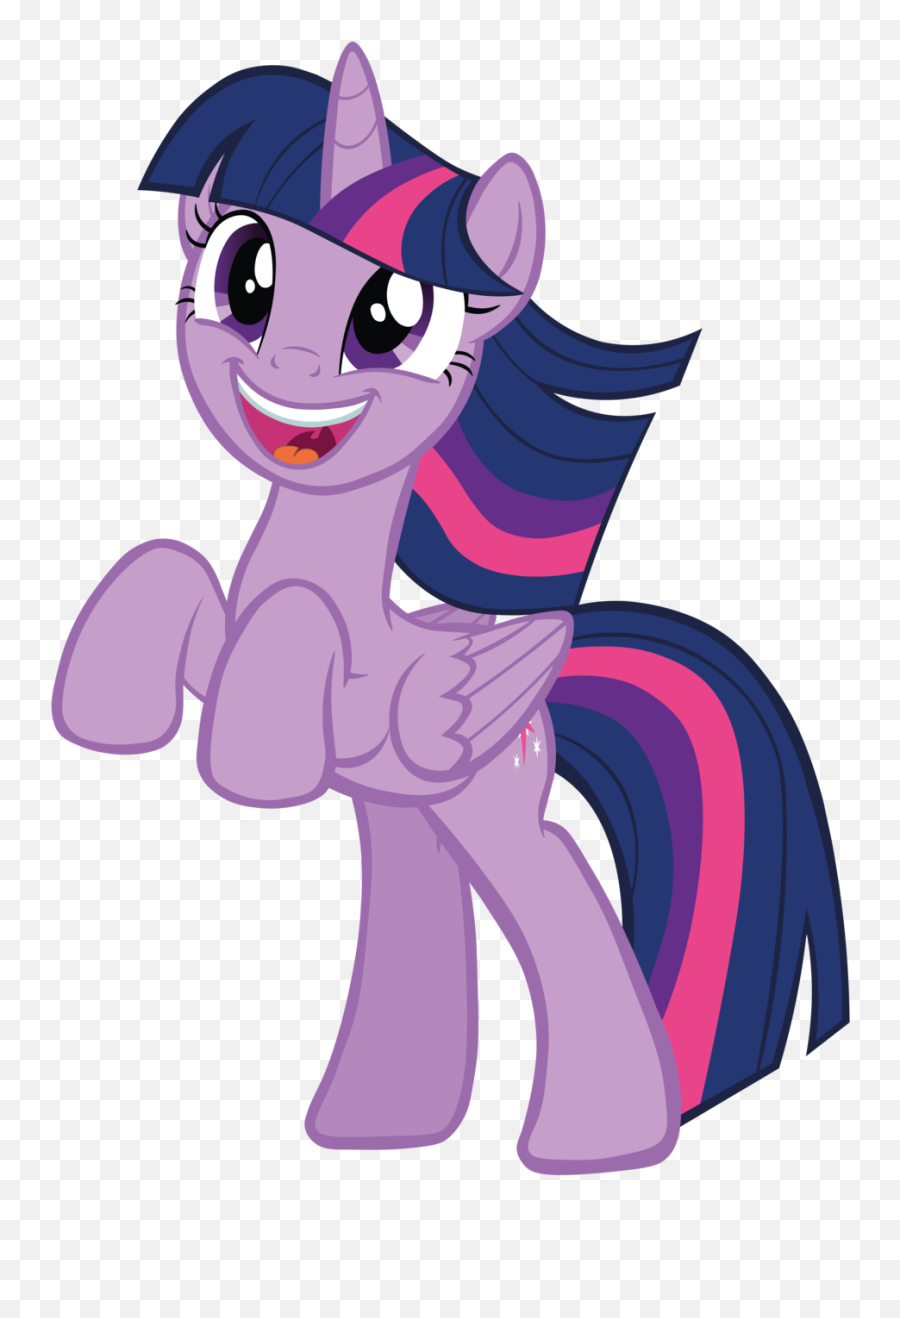 Download Princess Twilight Sparkle Images Twilight Sparkle - Alicorn Happy Twilight Sparkle Emoji,Sparkle Emoticon Transparant